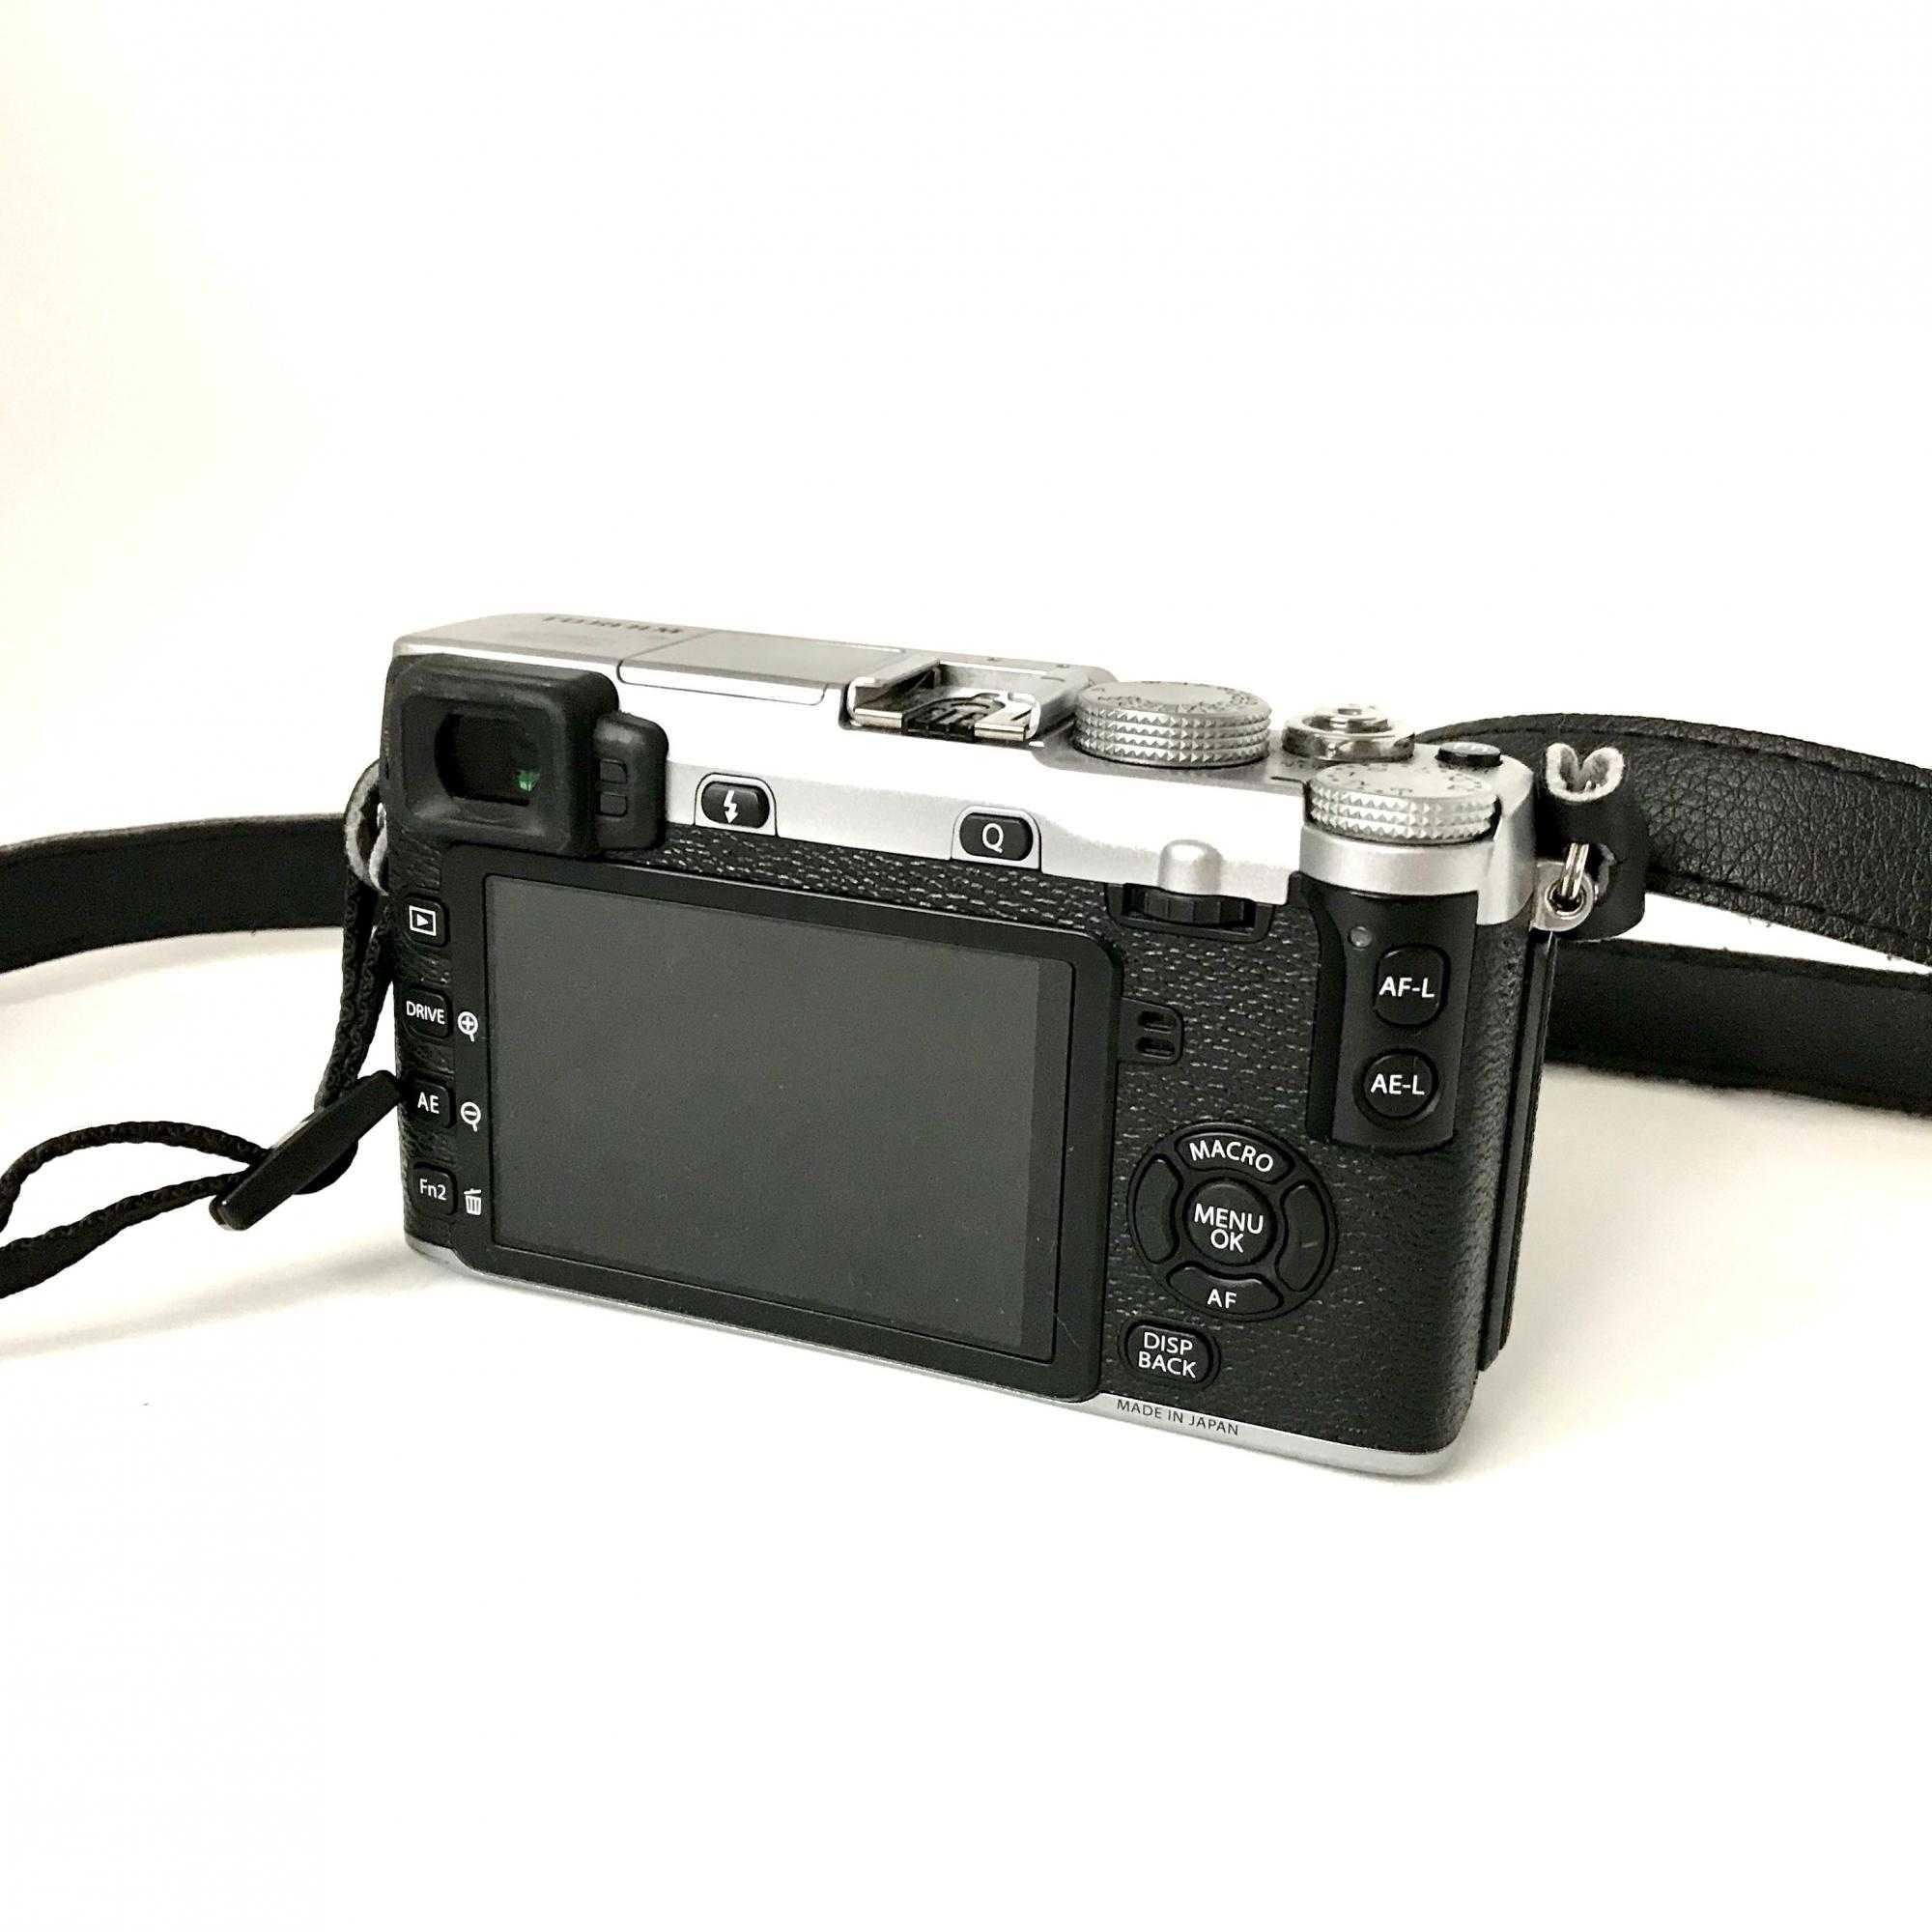 Цифровой фотоаппарат Fujifilm X-E2 - подробные характеристики обзоры видео фото Цены в интернет-магазинах где можно купить цифровую фотоаппарат Fujifilm X-E2